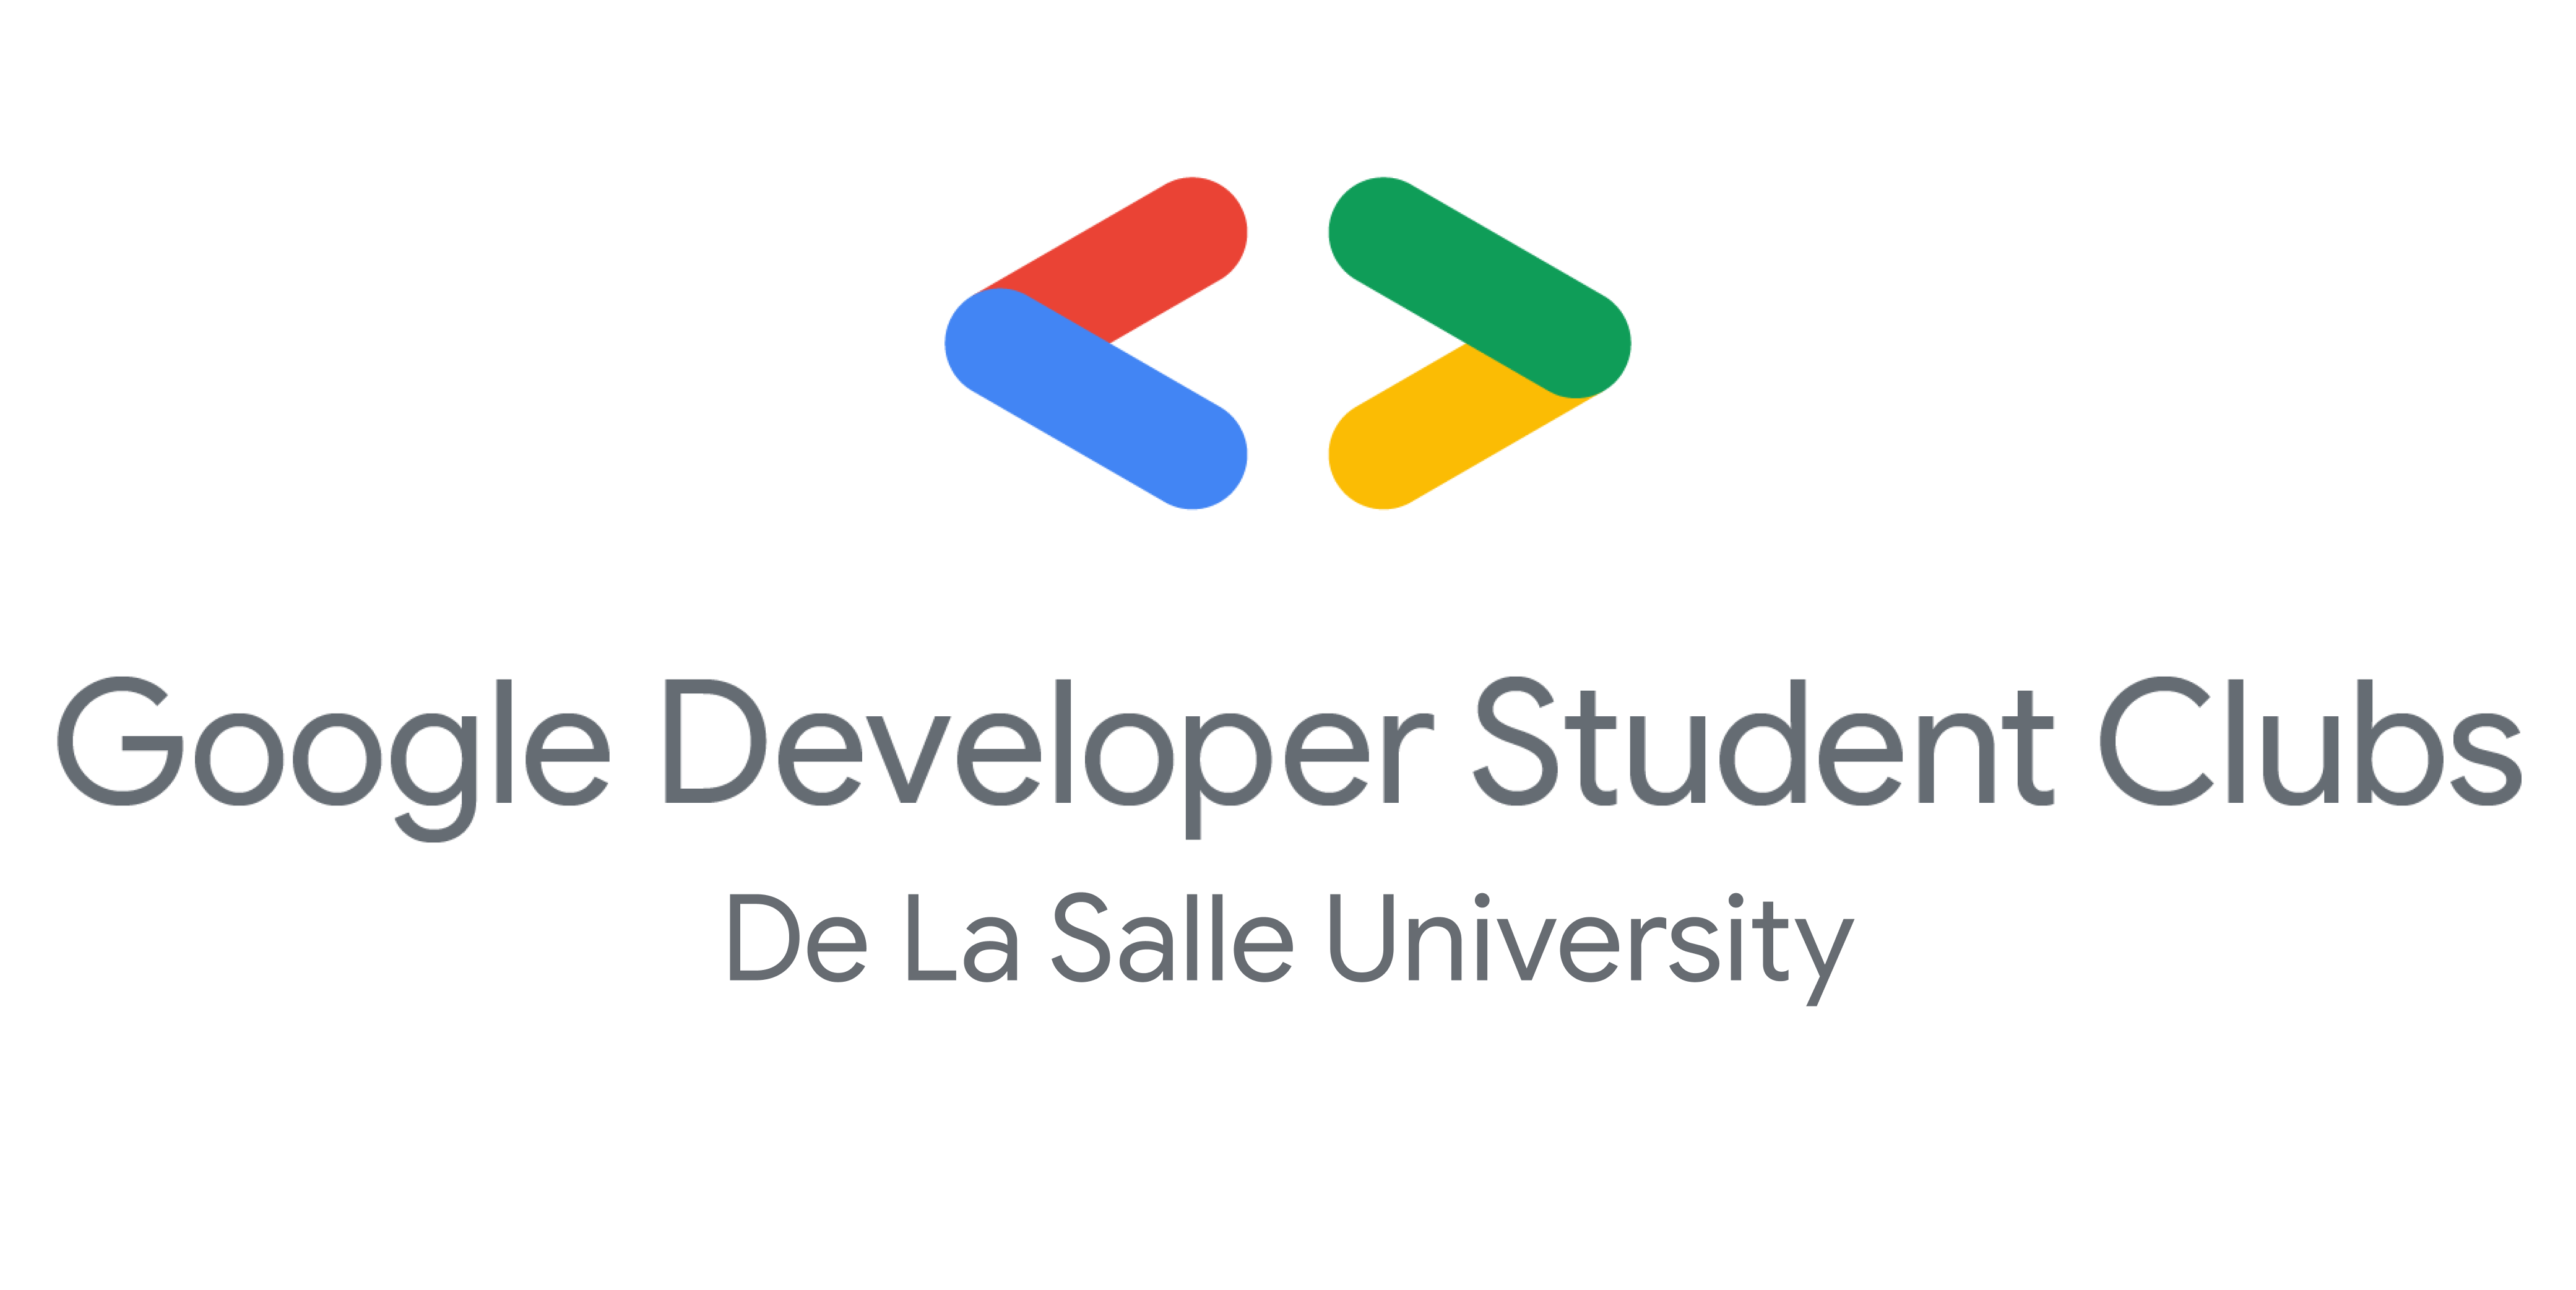 Google Developer Student Clubs De La Salle University